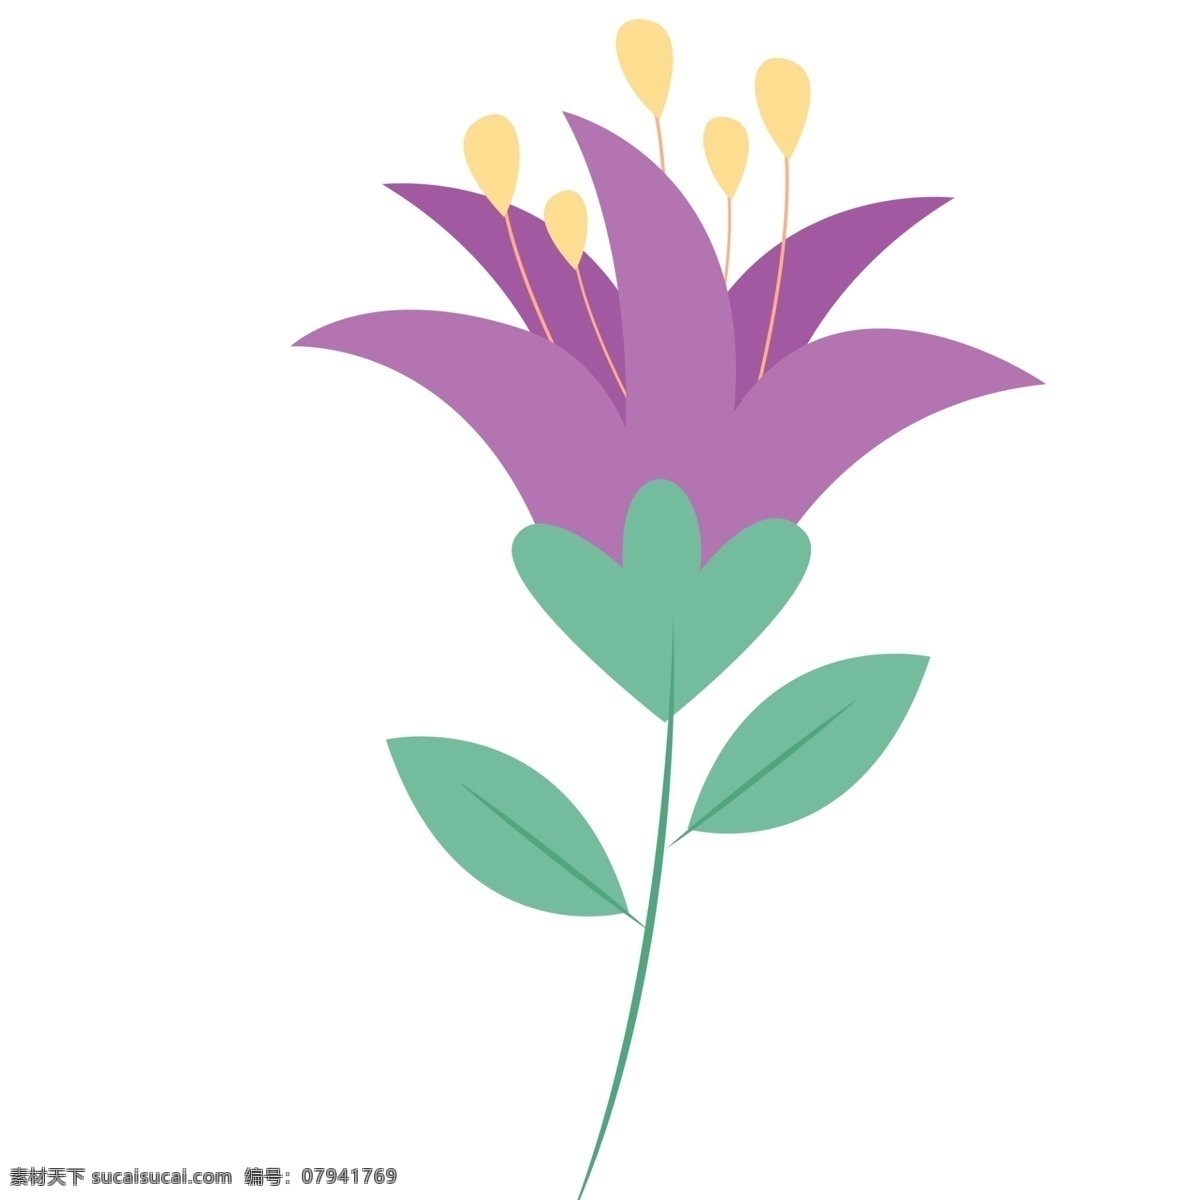 花儿 盛开 免 抠 图 紫色 花朵 漂亮的花朵 绿色生态植物 植被生长 春天到了 盛开的花朵